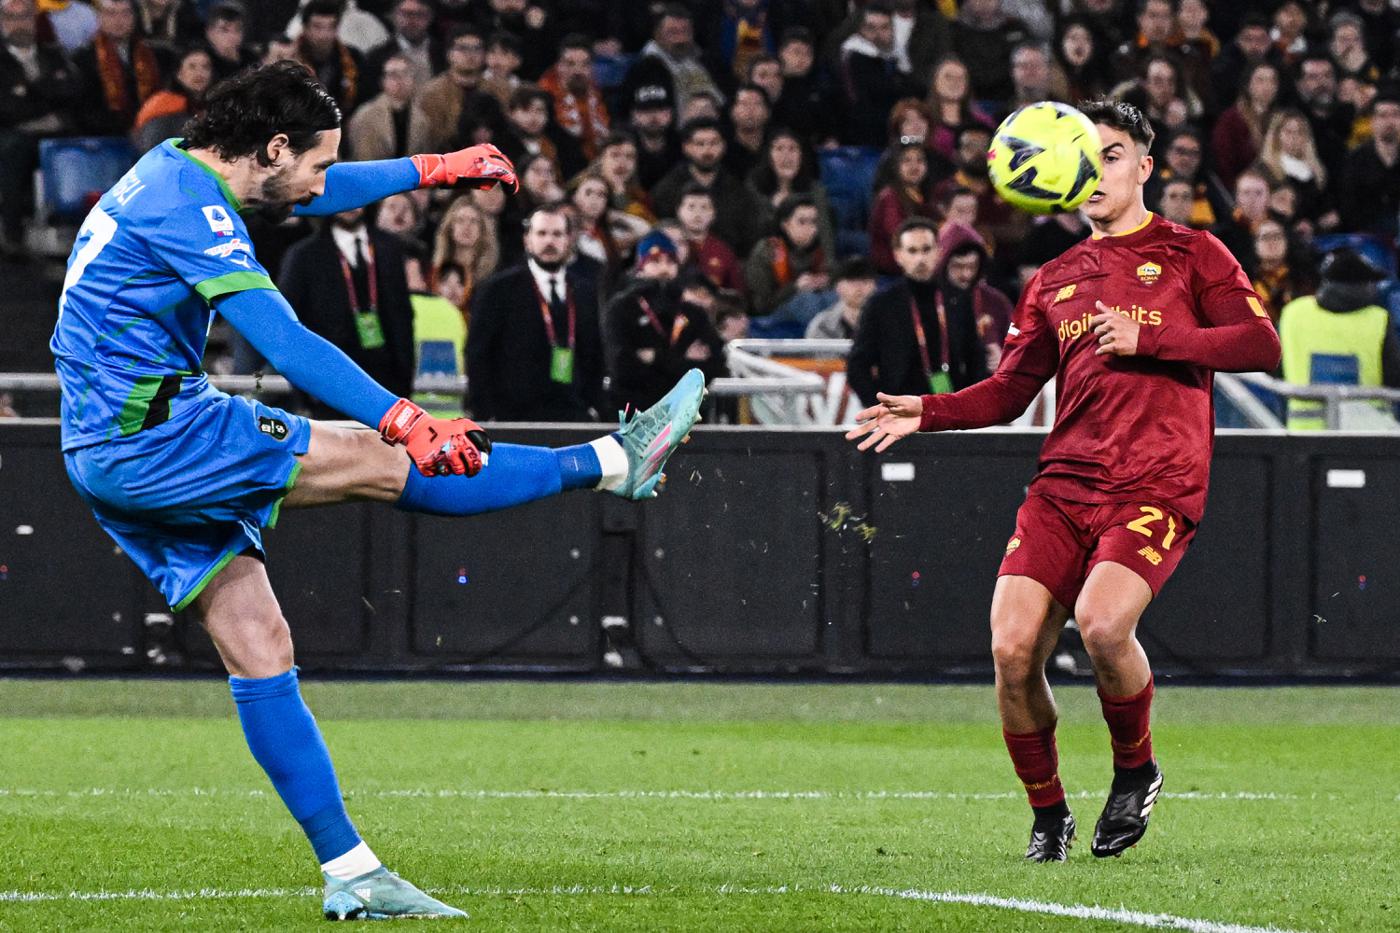 Roma - Sassuolo - 3-4. Italienische Liga, 26. Runde. Spielbericht, Statistik.